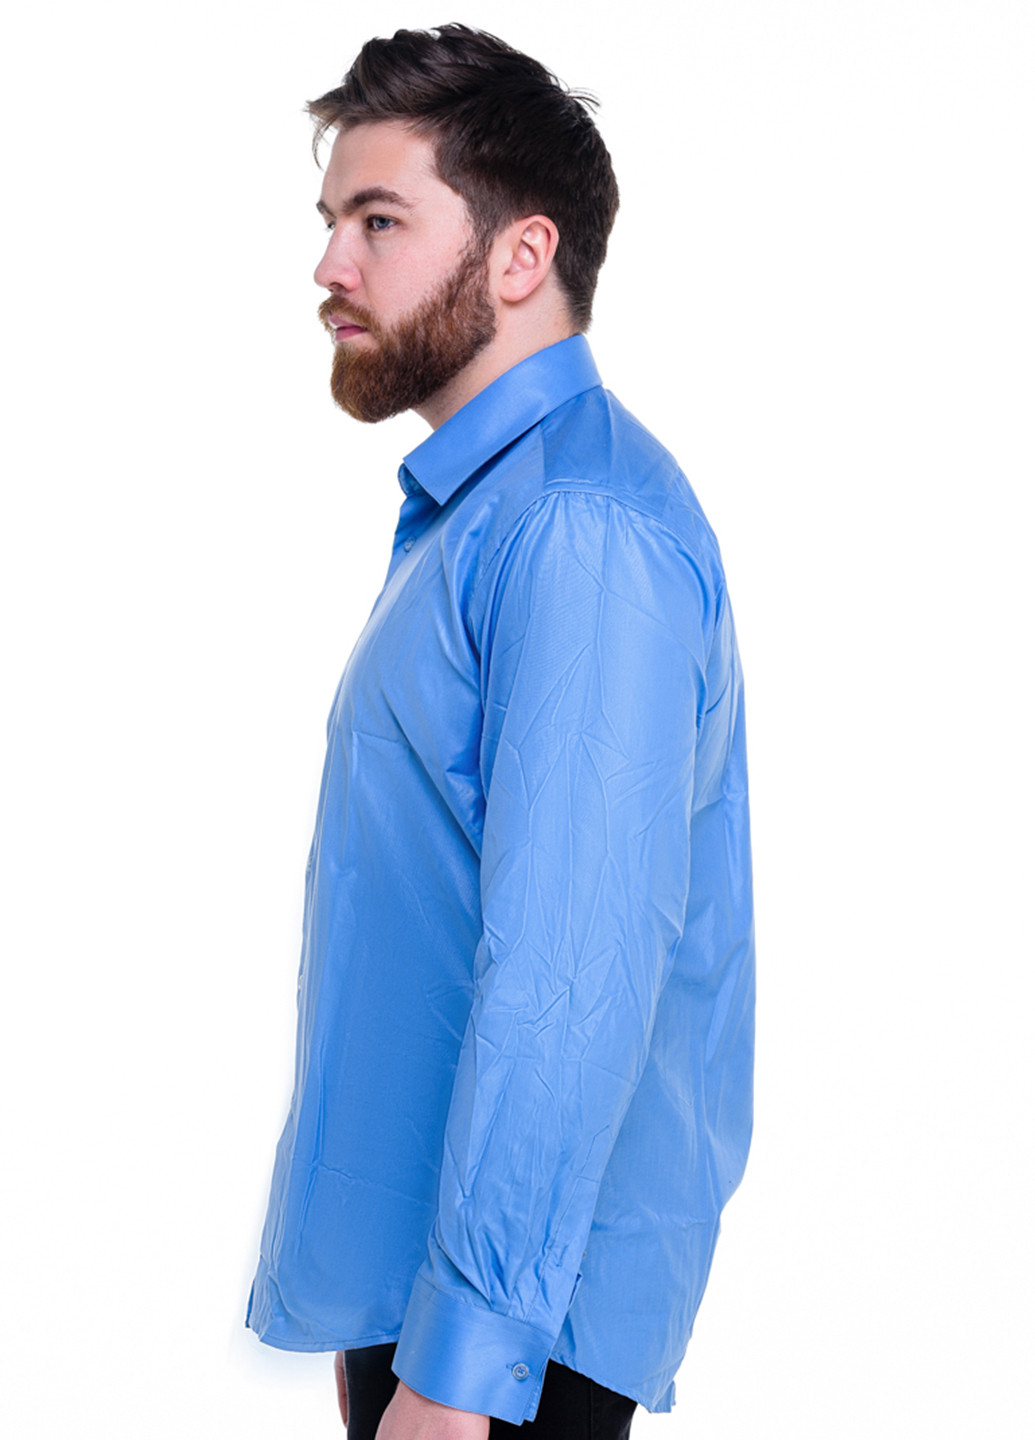 Голубой кэжуал рубашка однотонная ISSA PLUS с длинным рукавом